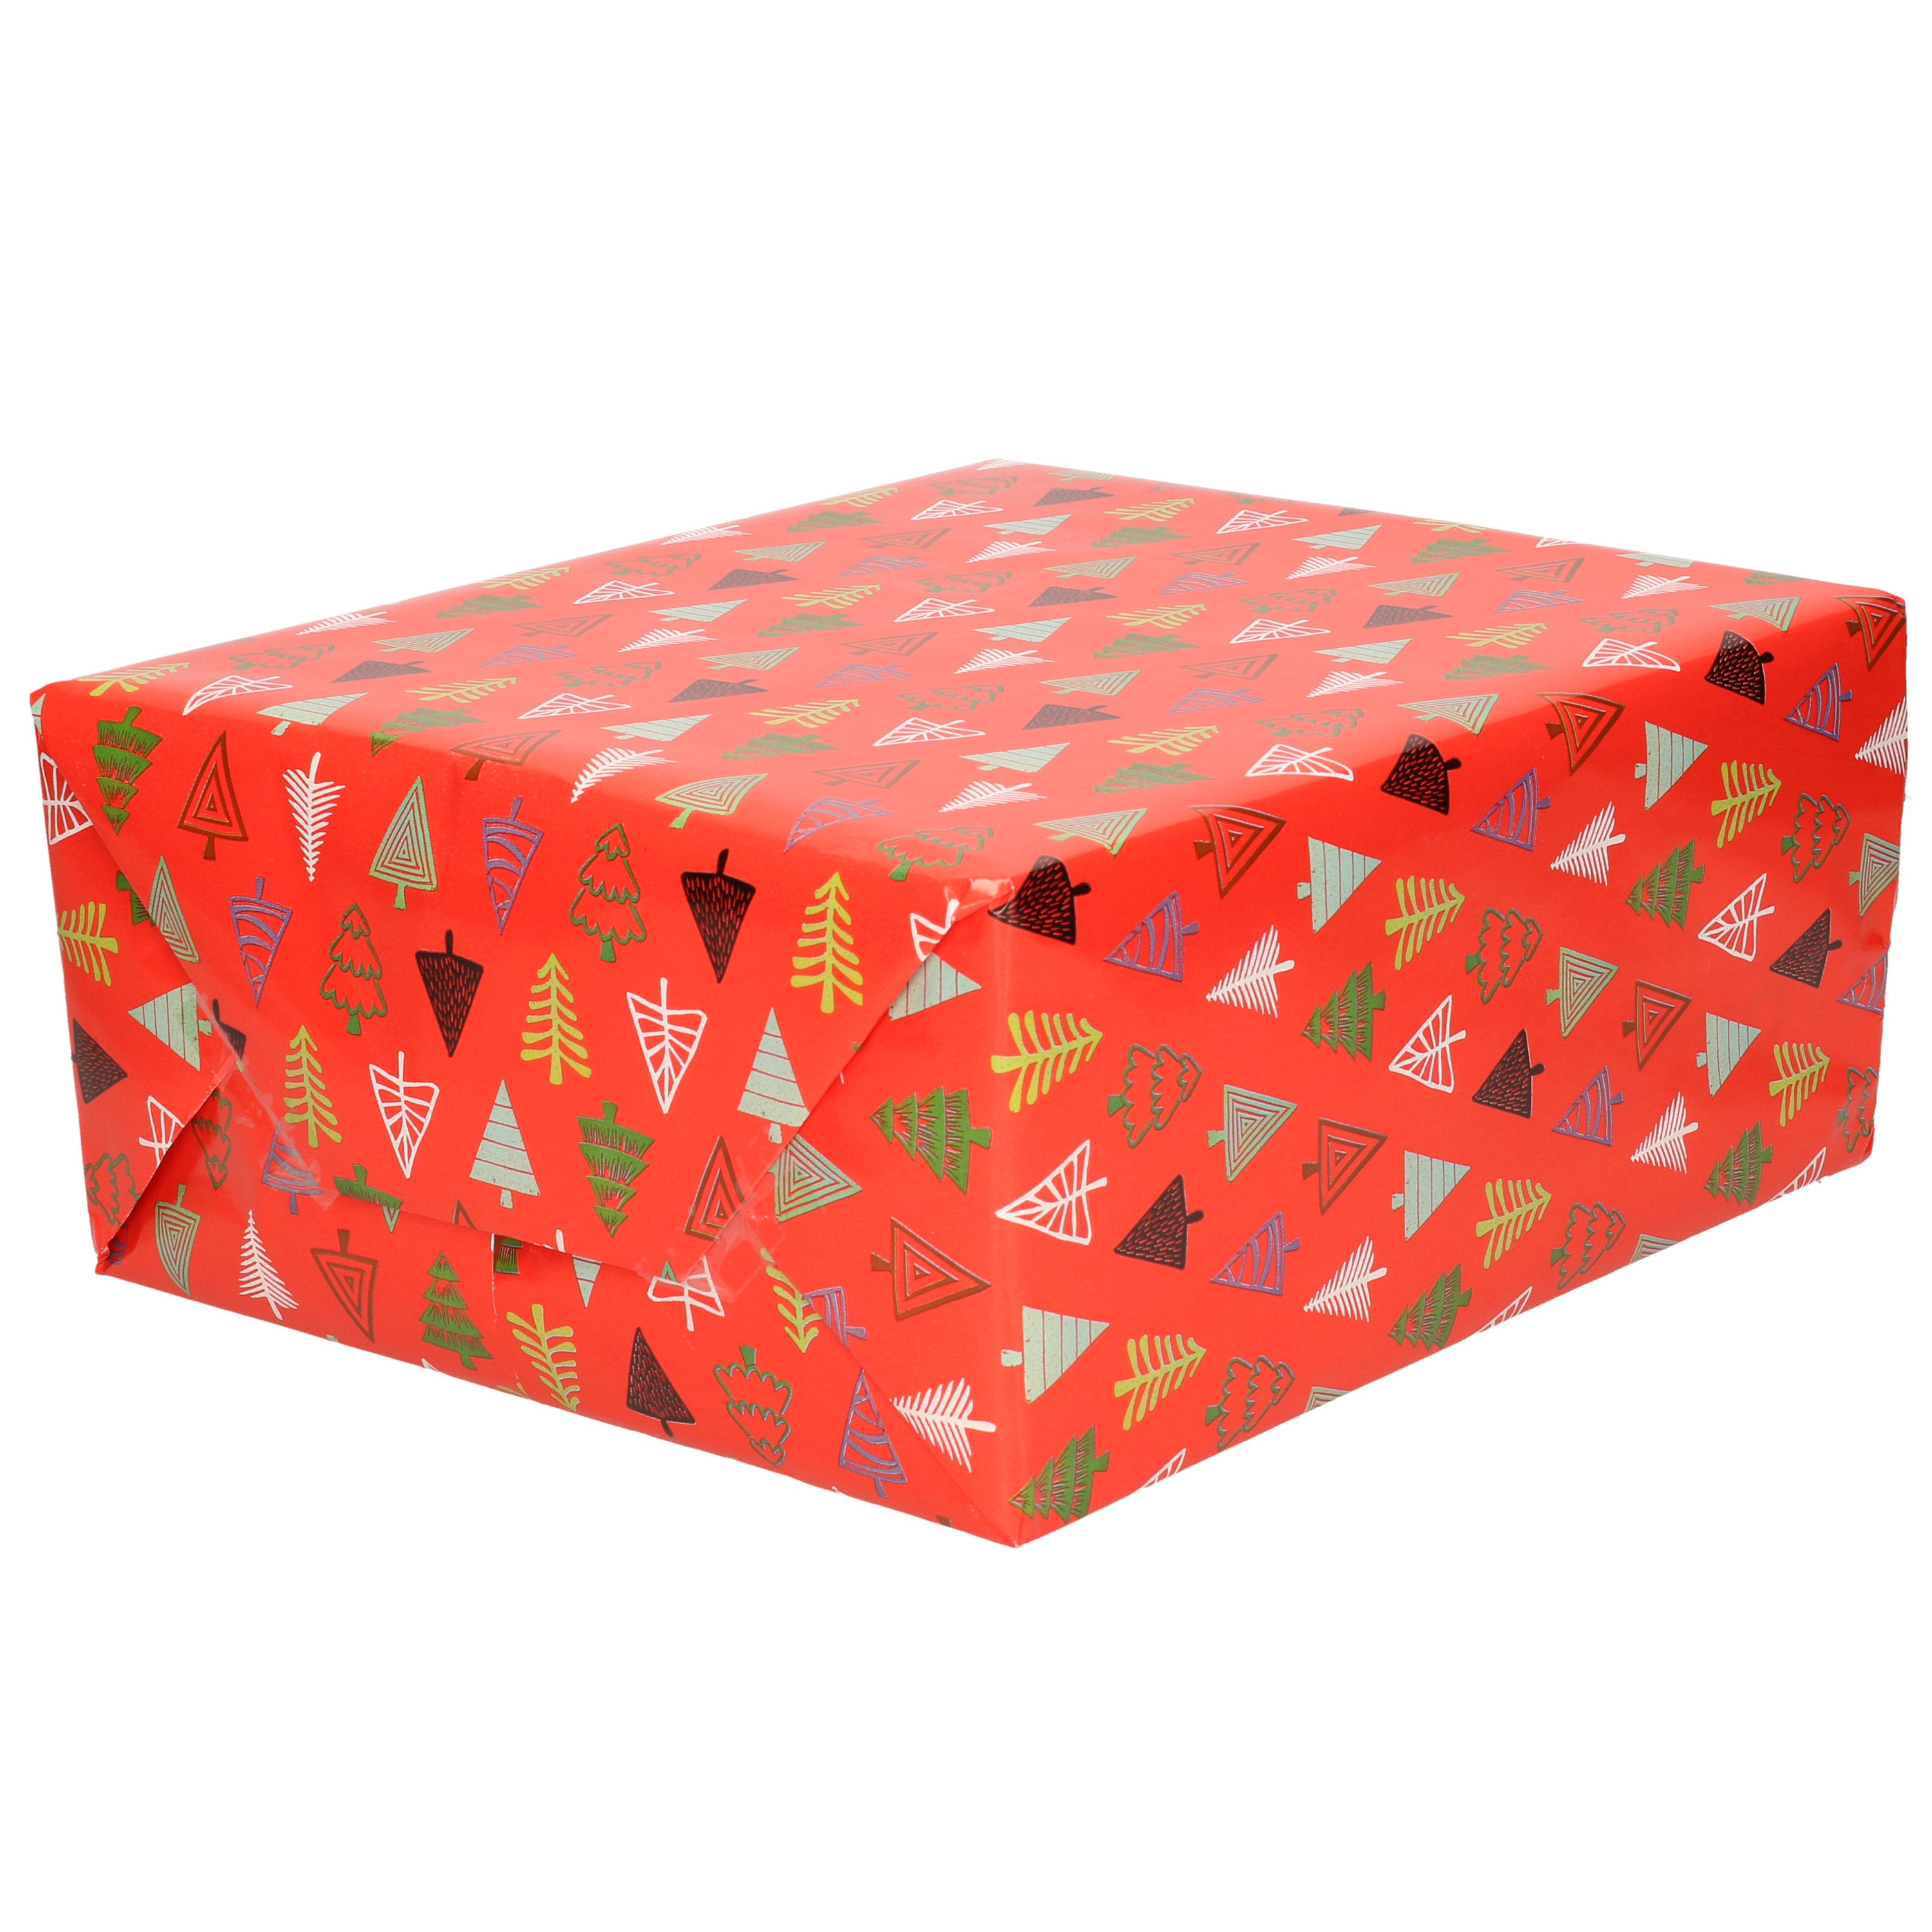 1x Rollen Kerst inpakpapier/cadeaupapier rood/gekleurde bomen 2,5 x 0,7 meter